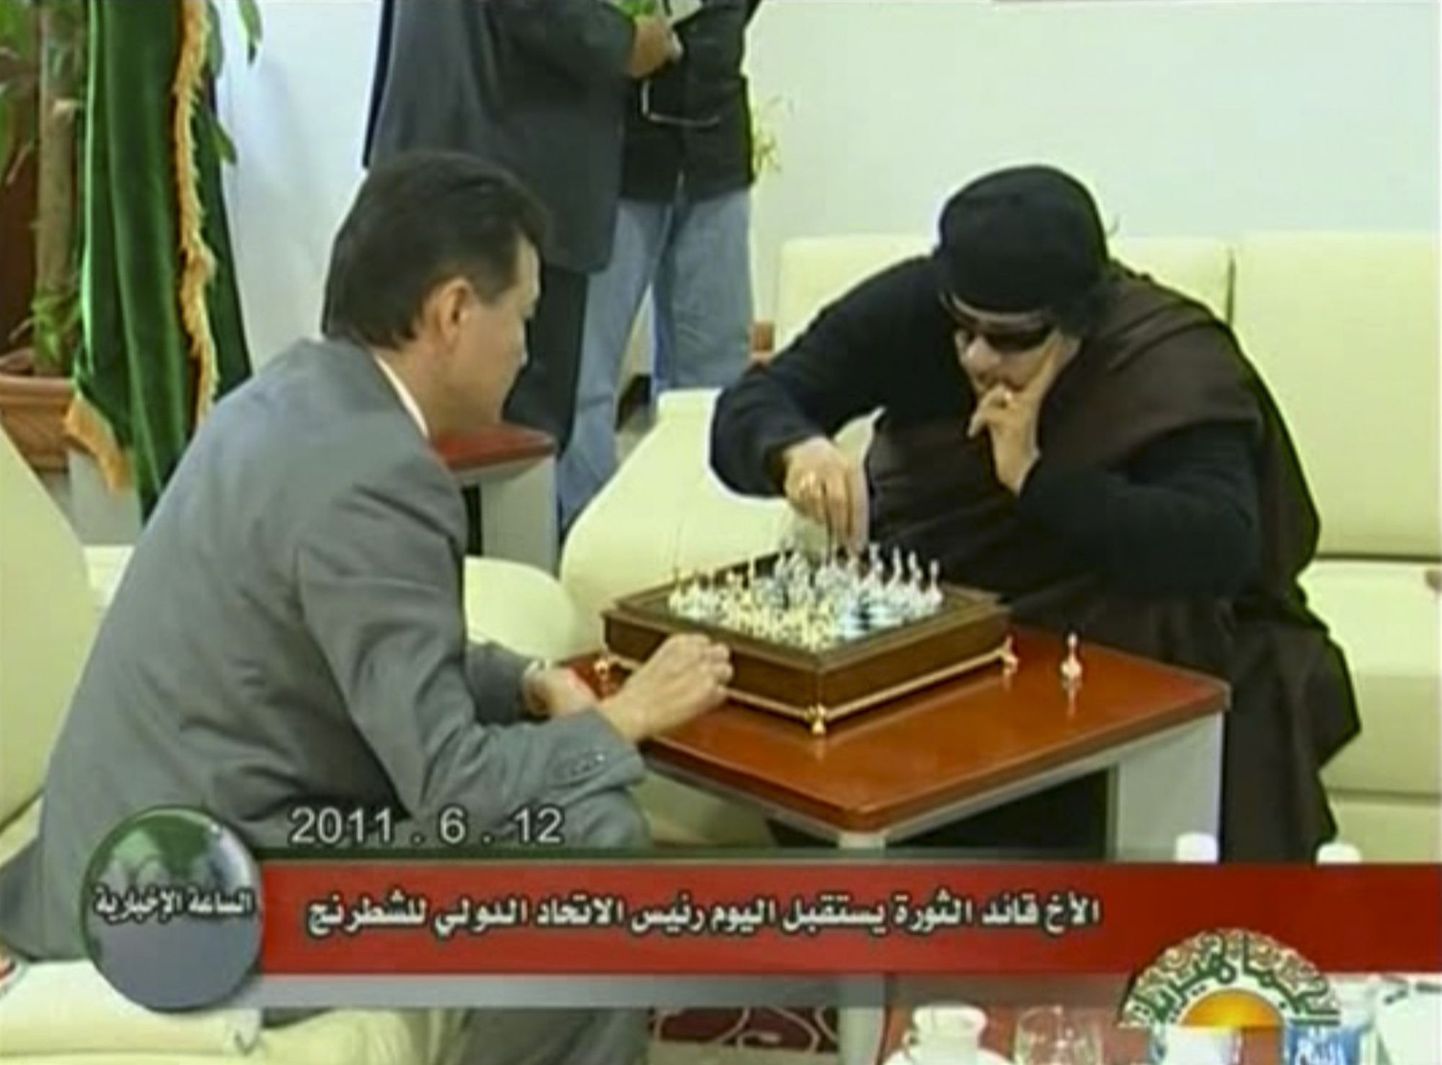 Илюмжинов и Каддафи за шахматной партией.